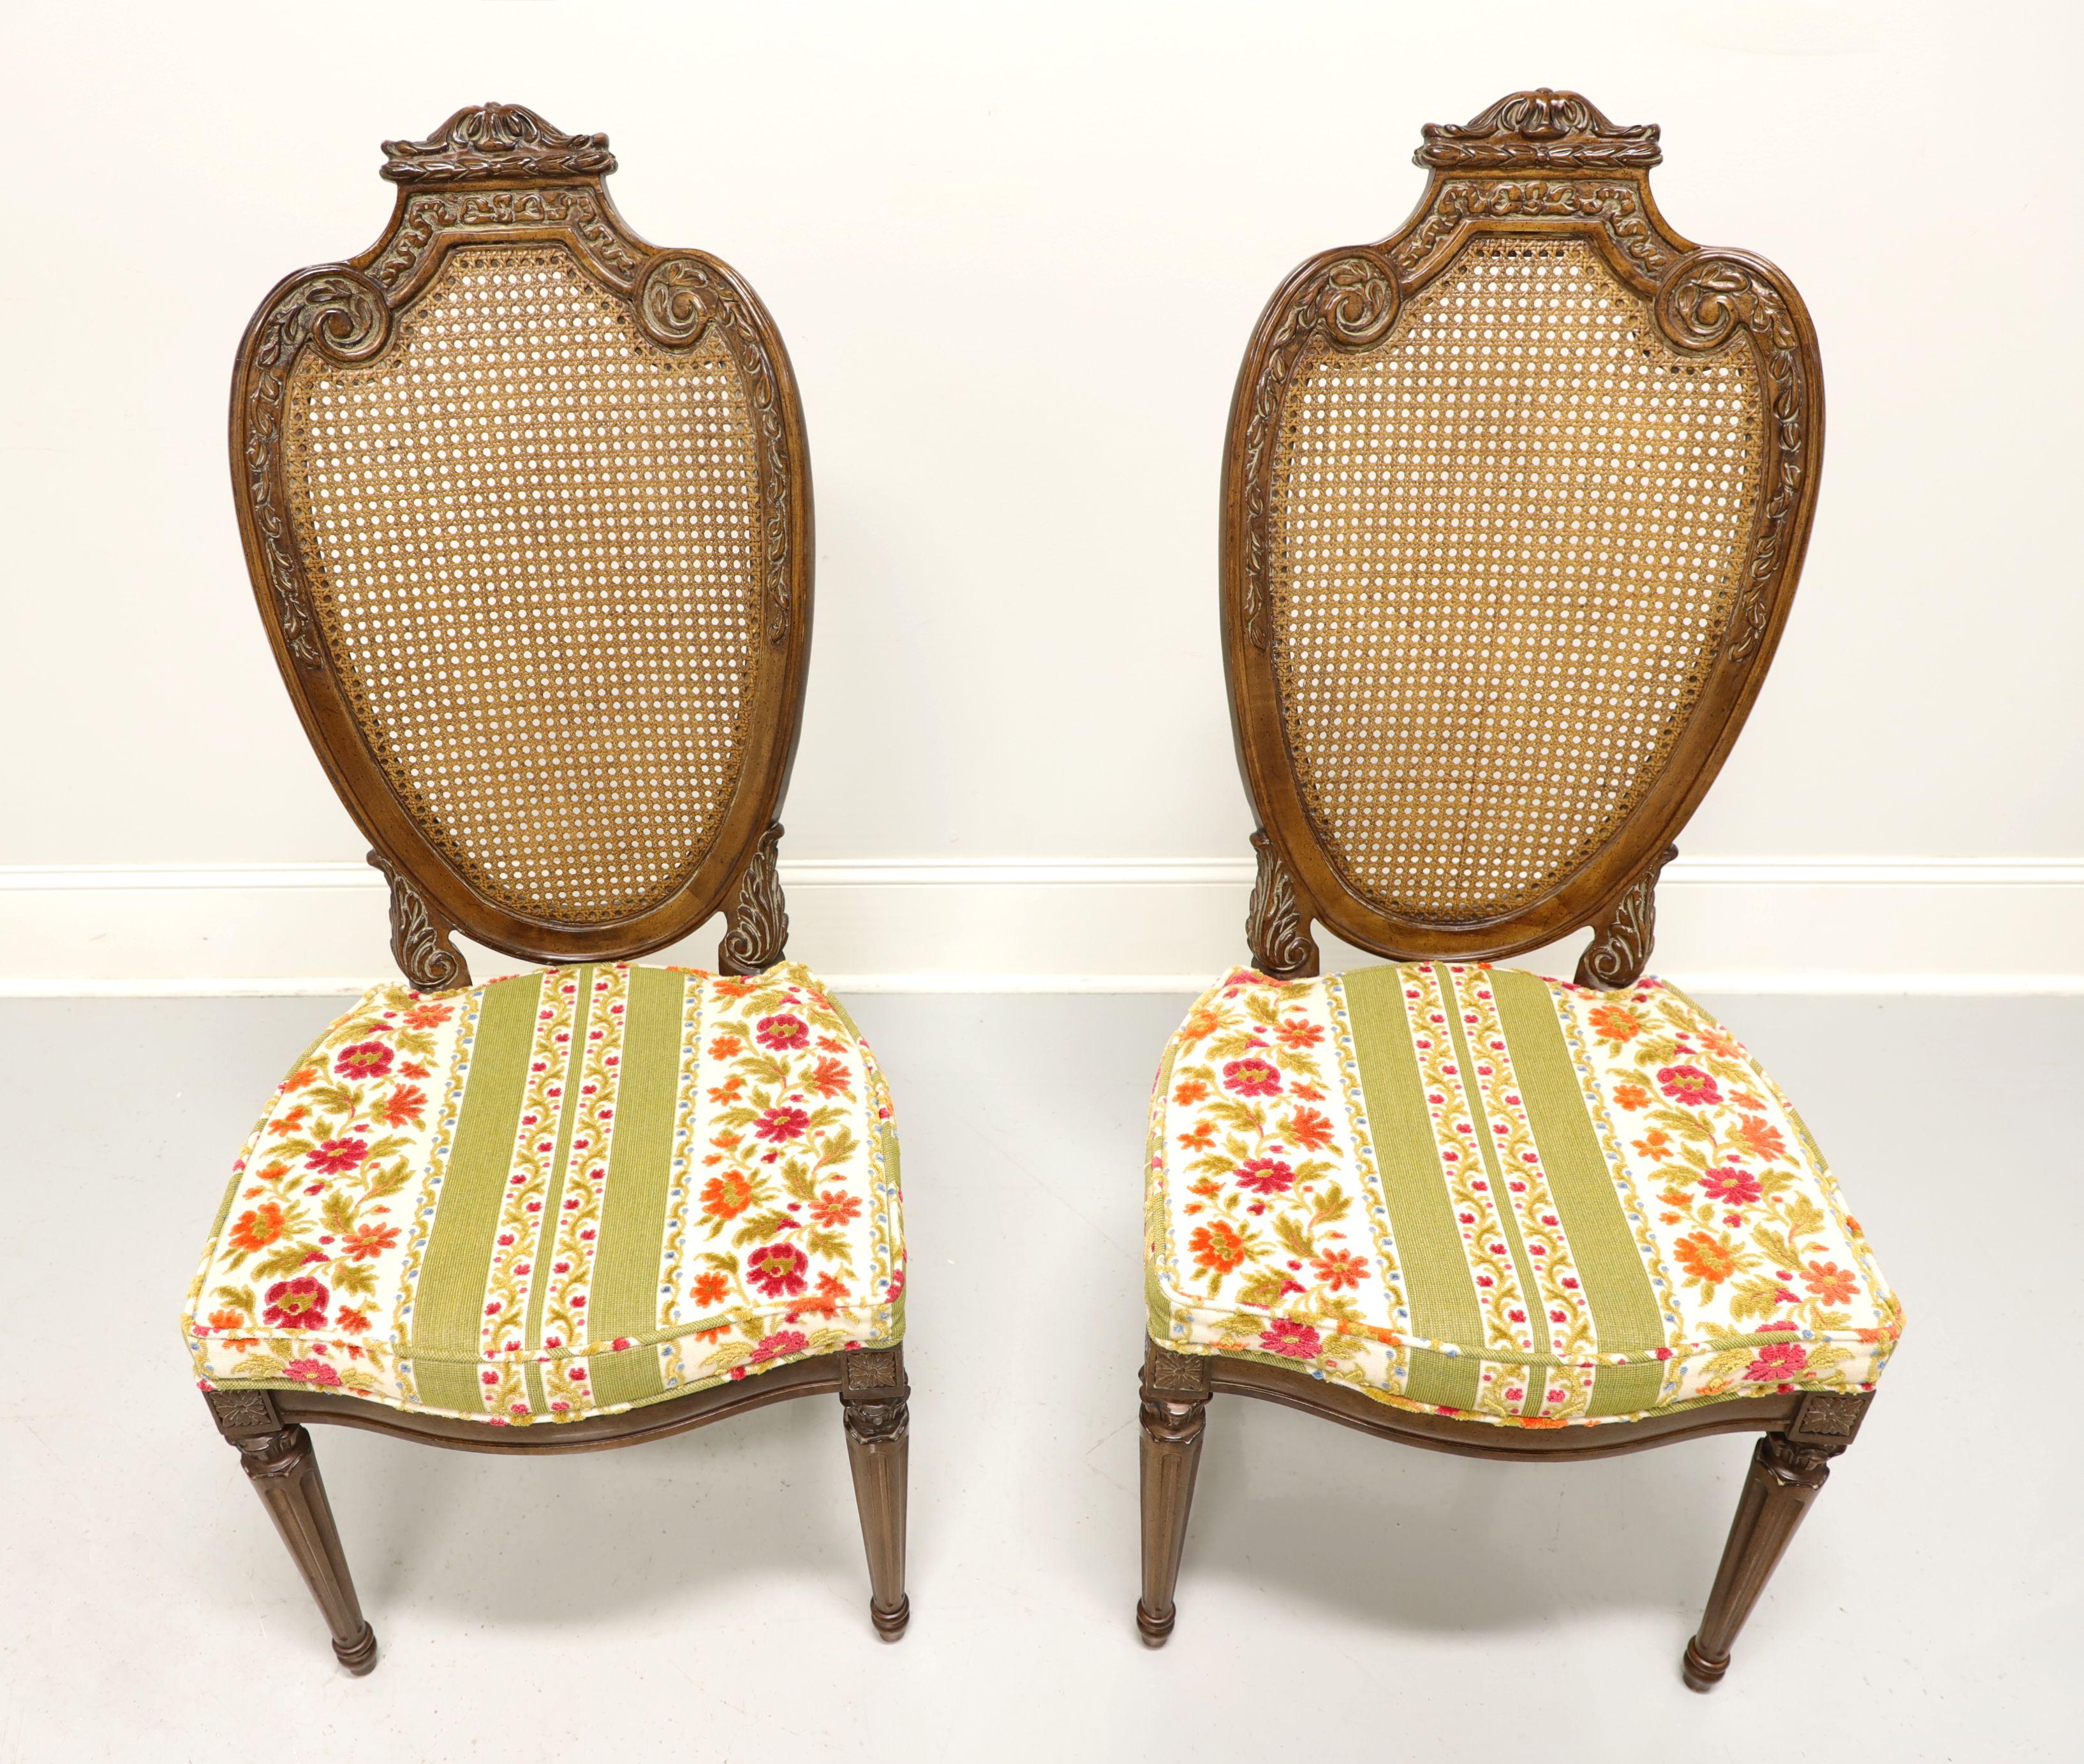 Paire de chaises latérales de salle à manger de style Louis XVI de style provincial français par Hellam. Noyer, légèrement usé, avec dossiers ovales cannelés et sculptés comme des boucliers, sièges tapissés de tissu brocart floral, tablier sculpté,